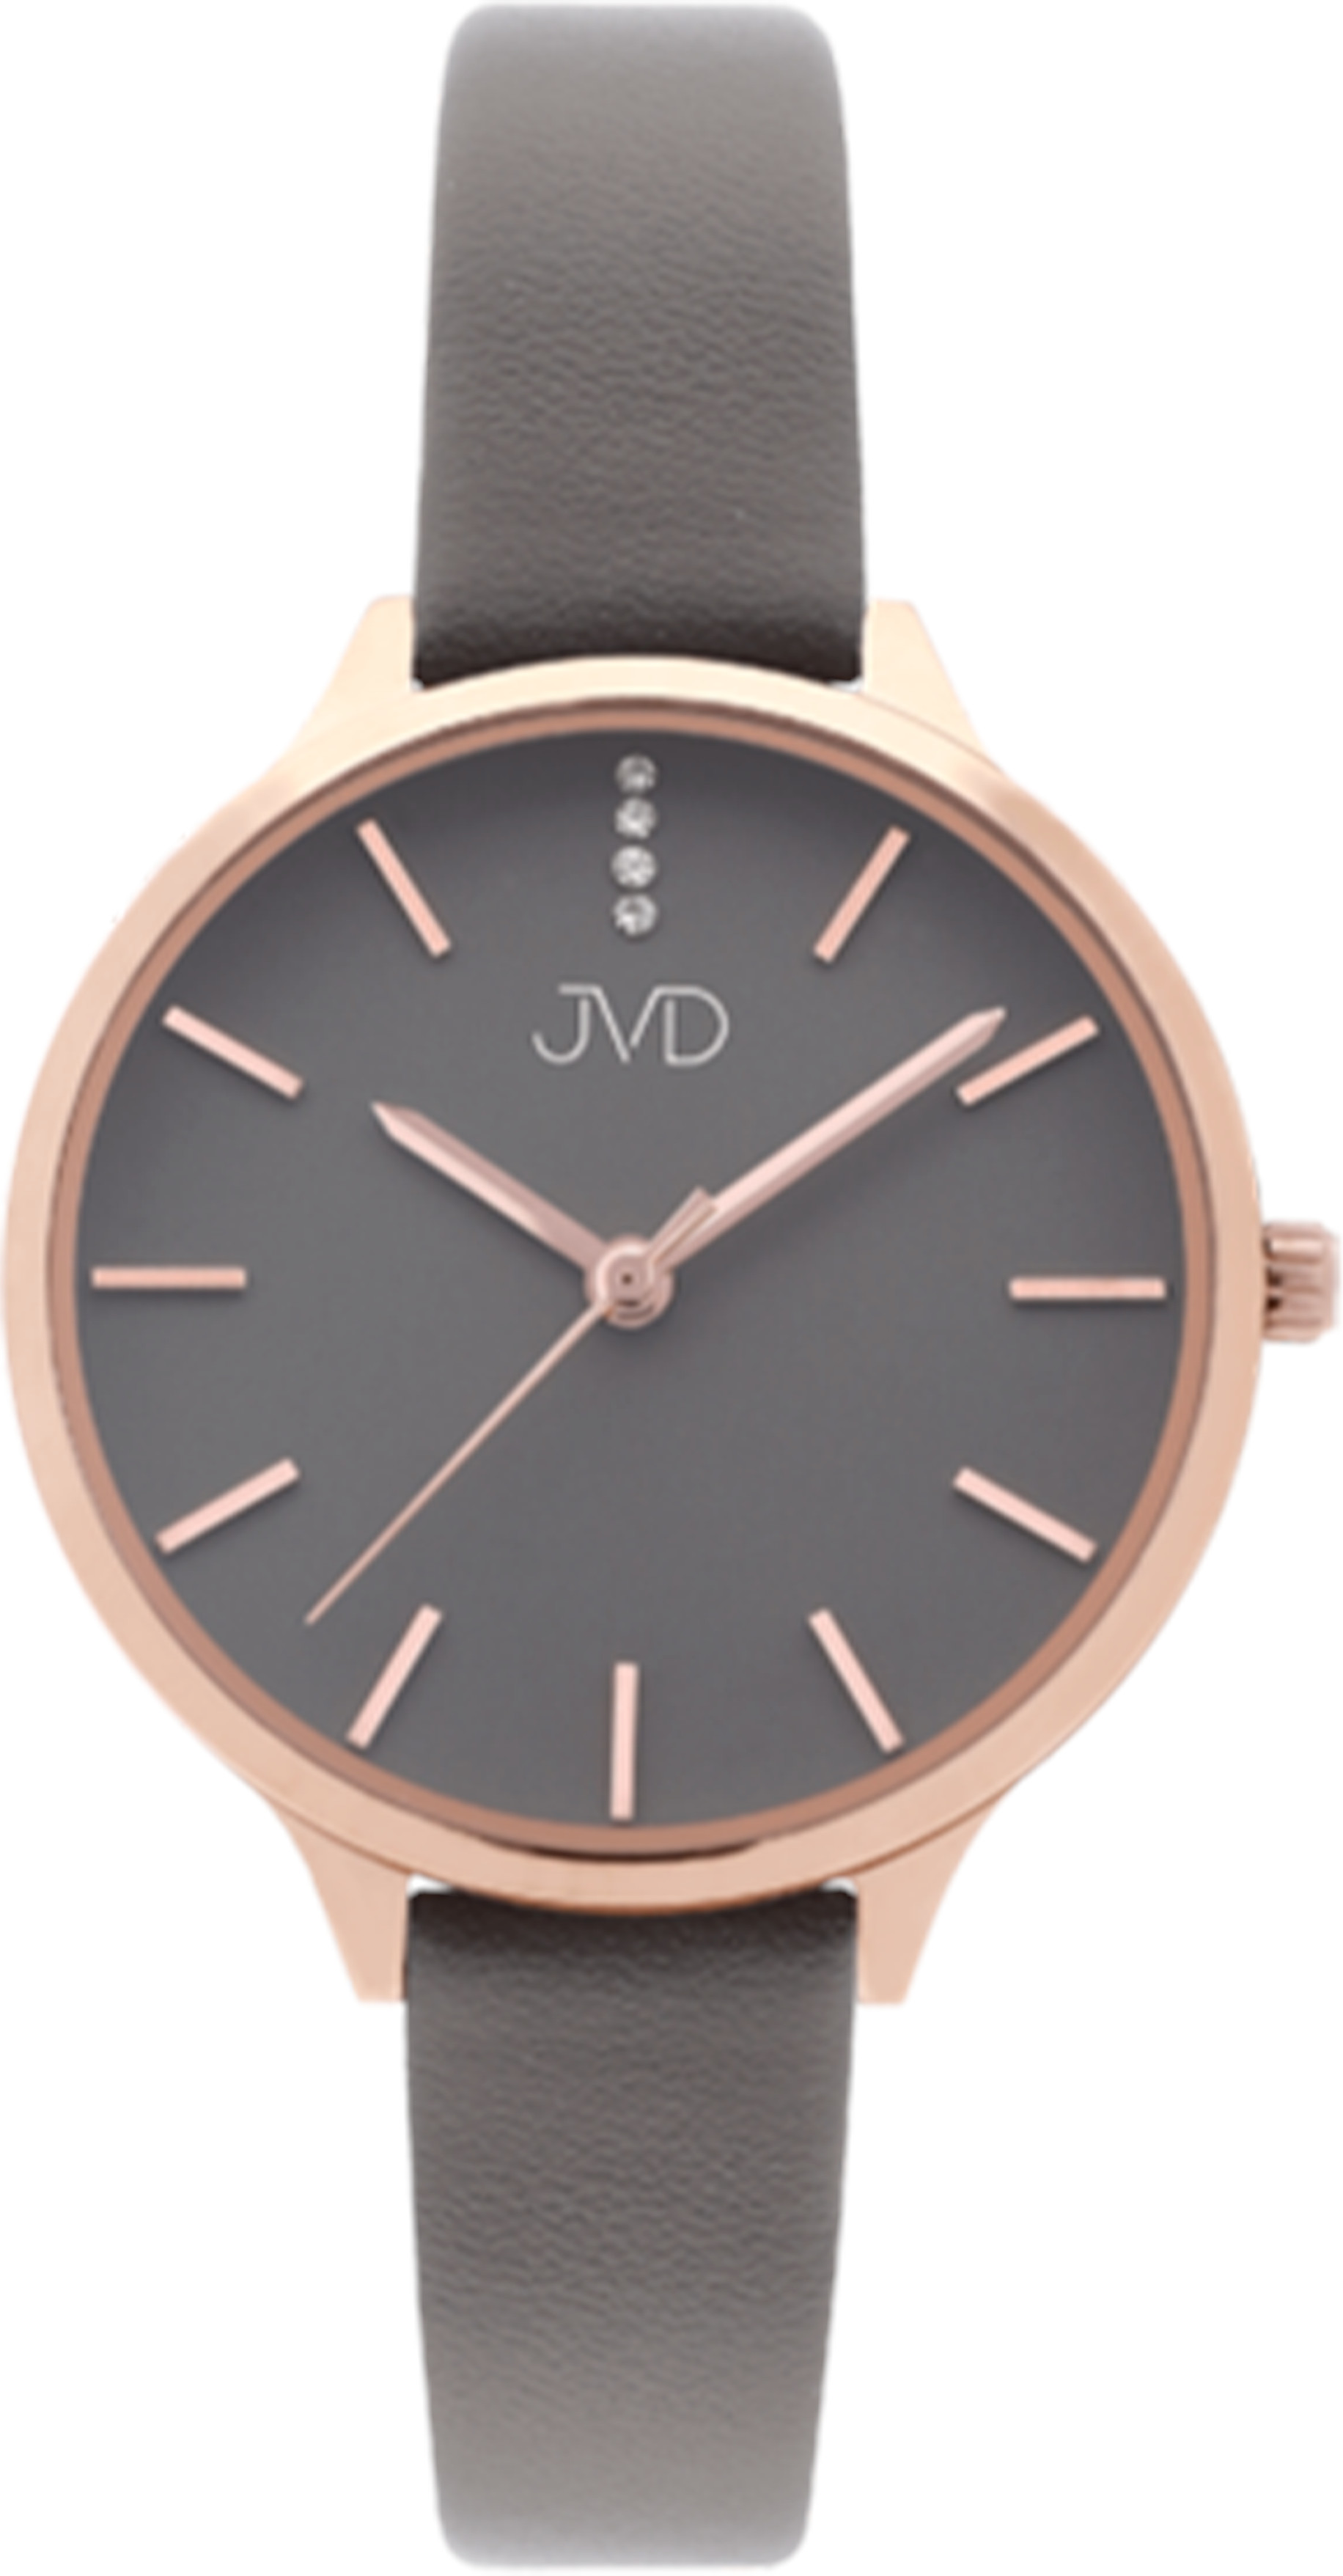 JVD Analogové hodinky JZ201.4